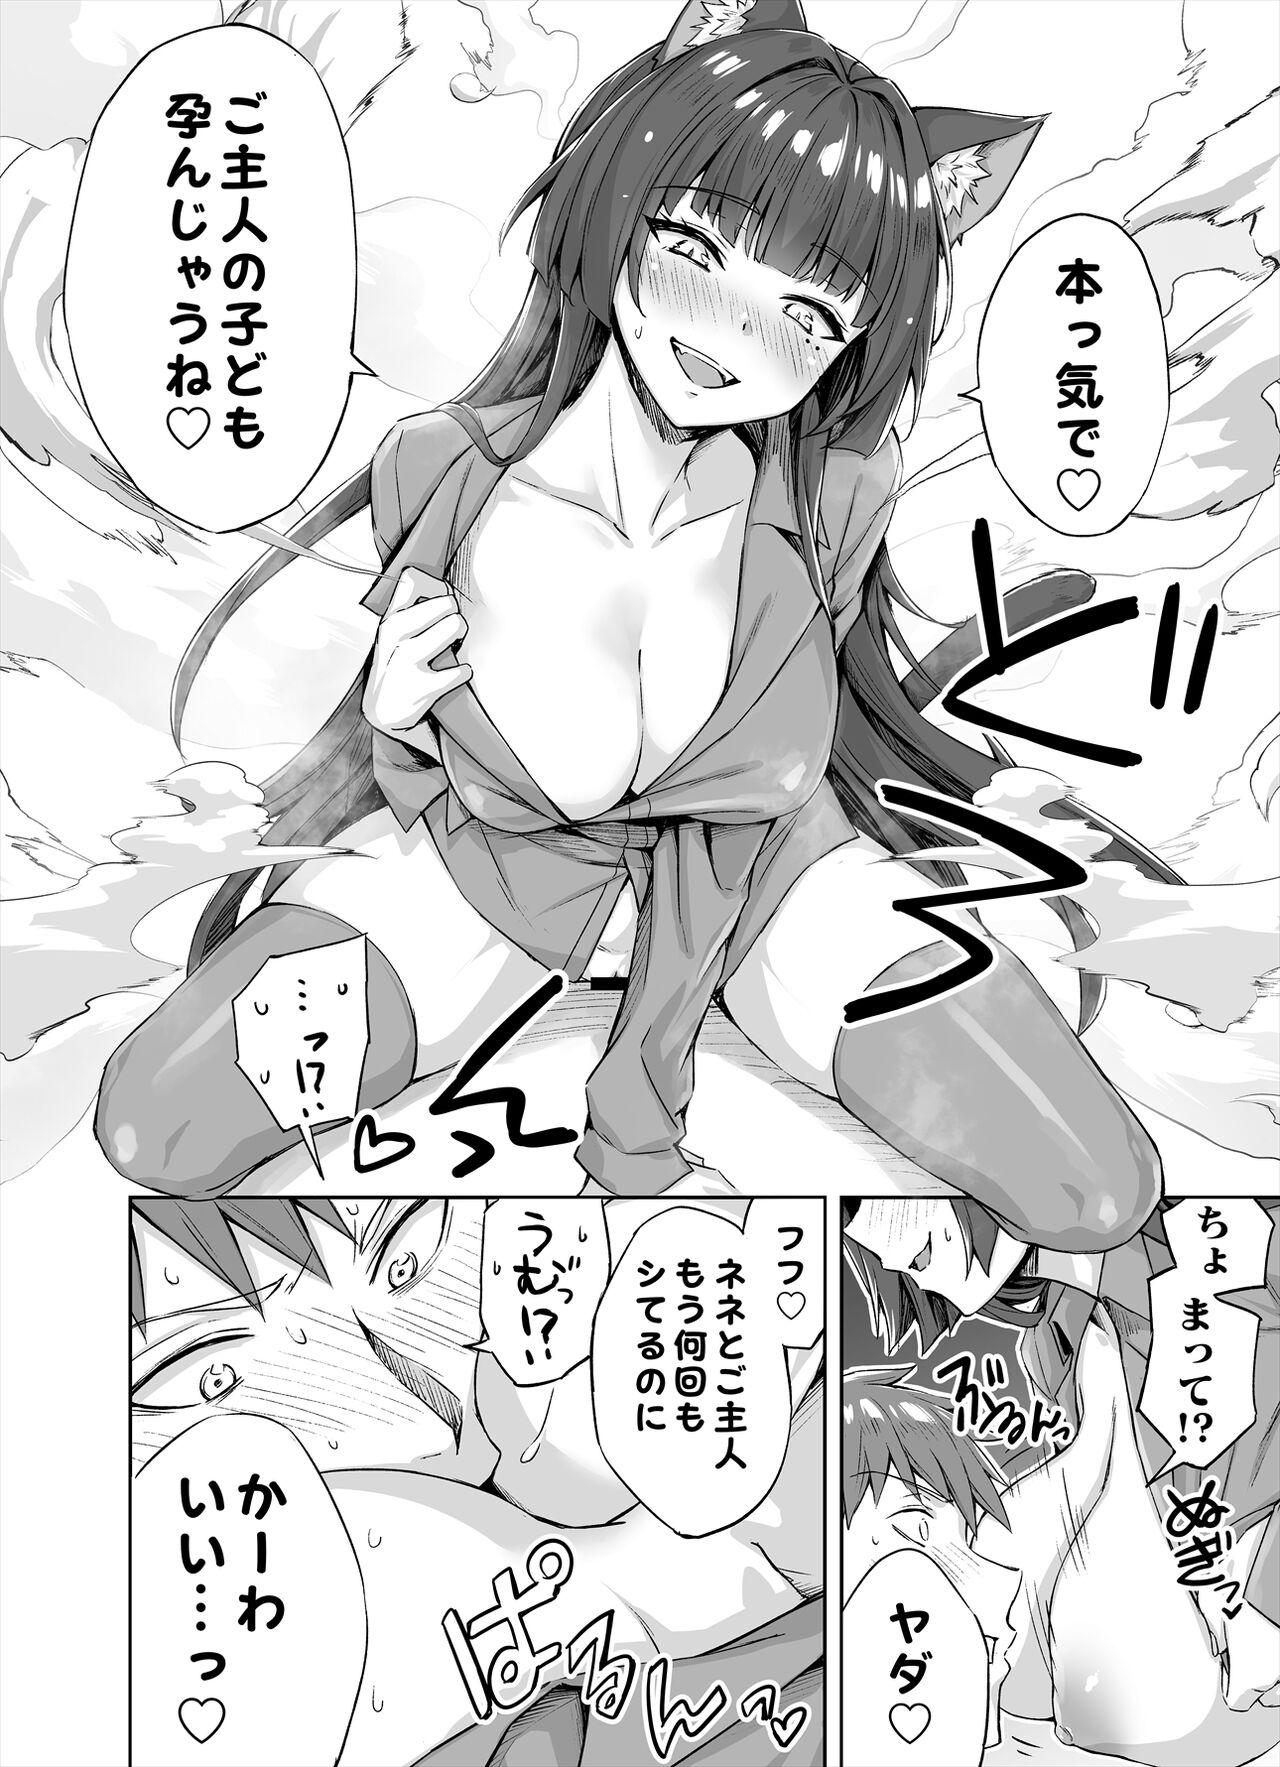 Putinha [Kotatsu] Yandere-kai Neko-chan Seijin Manga #01 Concha - Picture 3